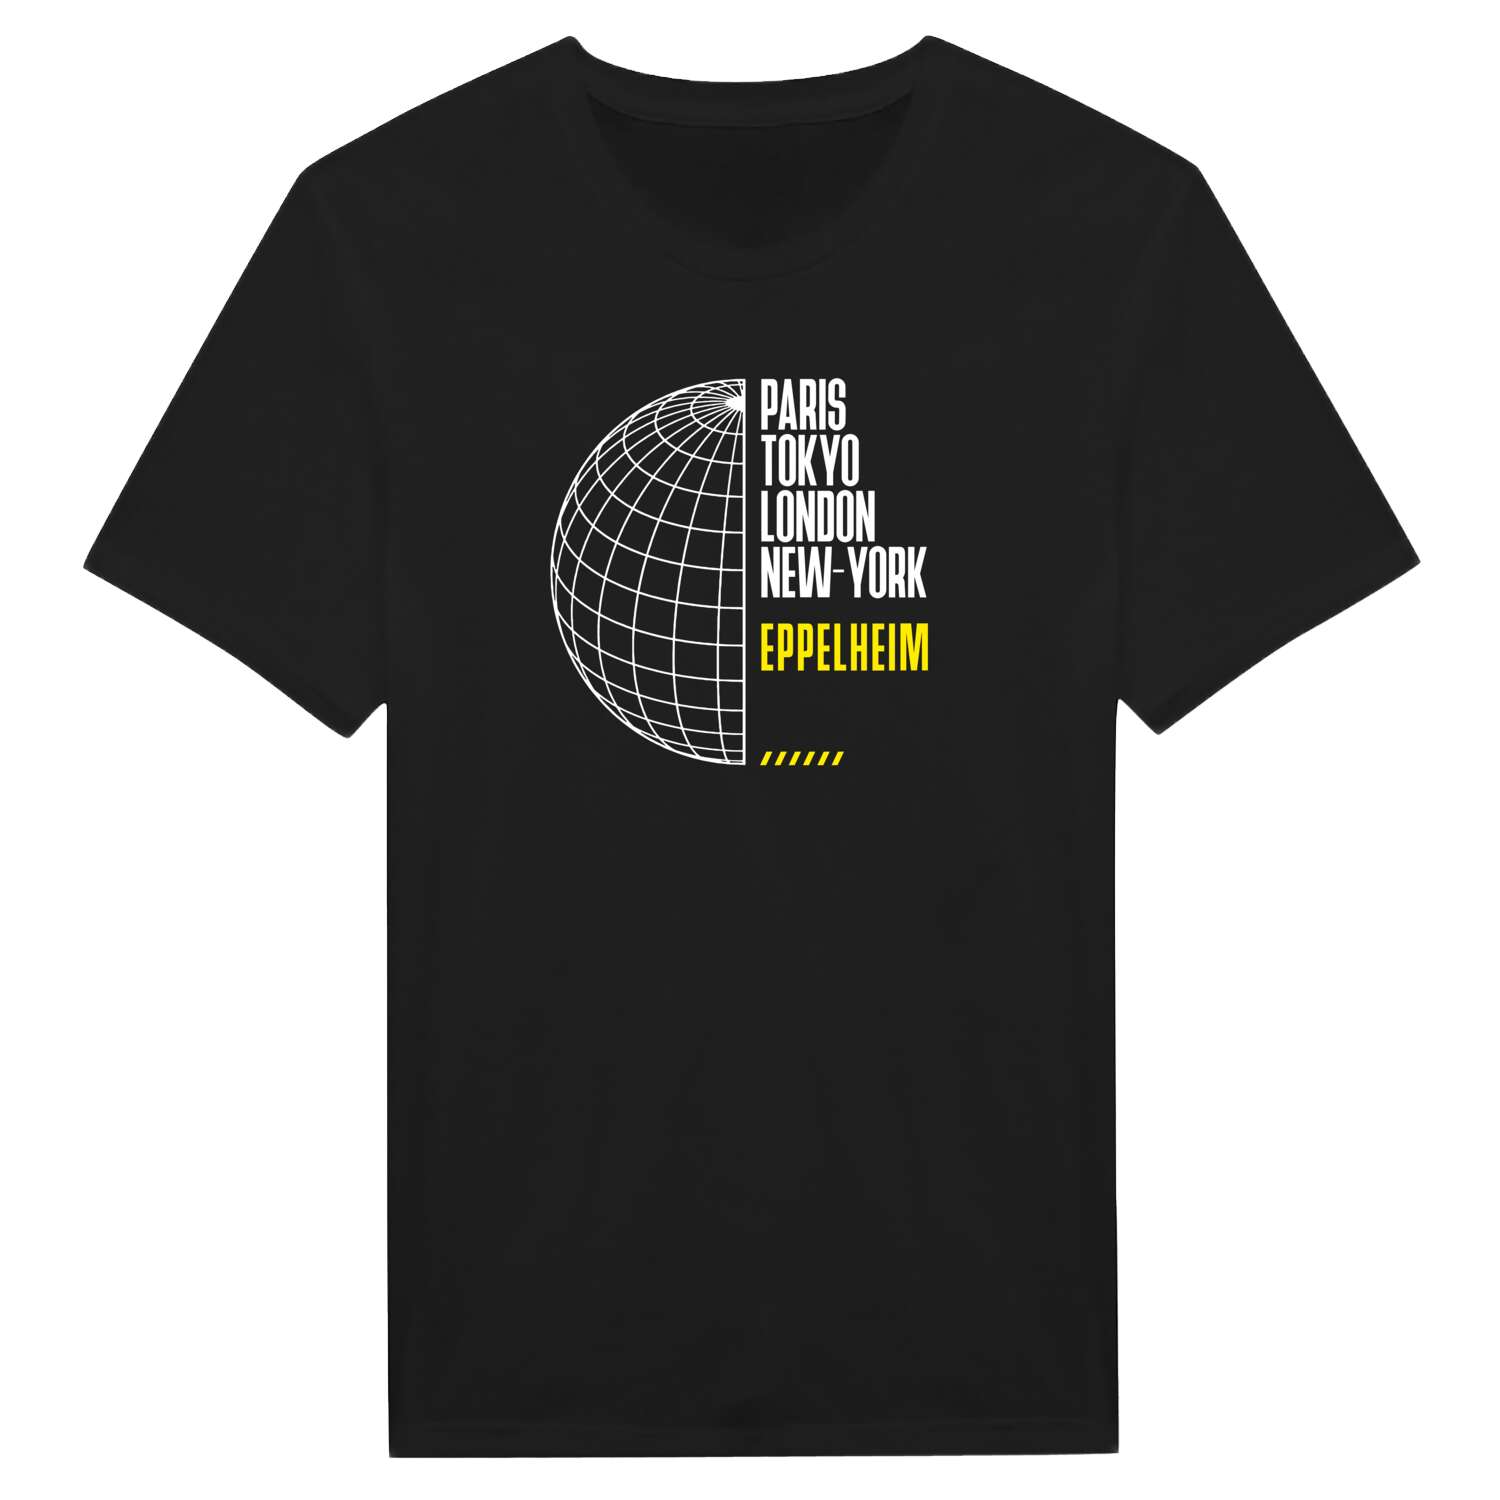 Eppelheim T-Shirt »Paris Tokyo London«